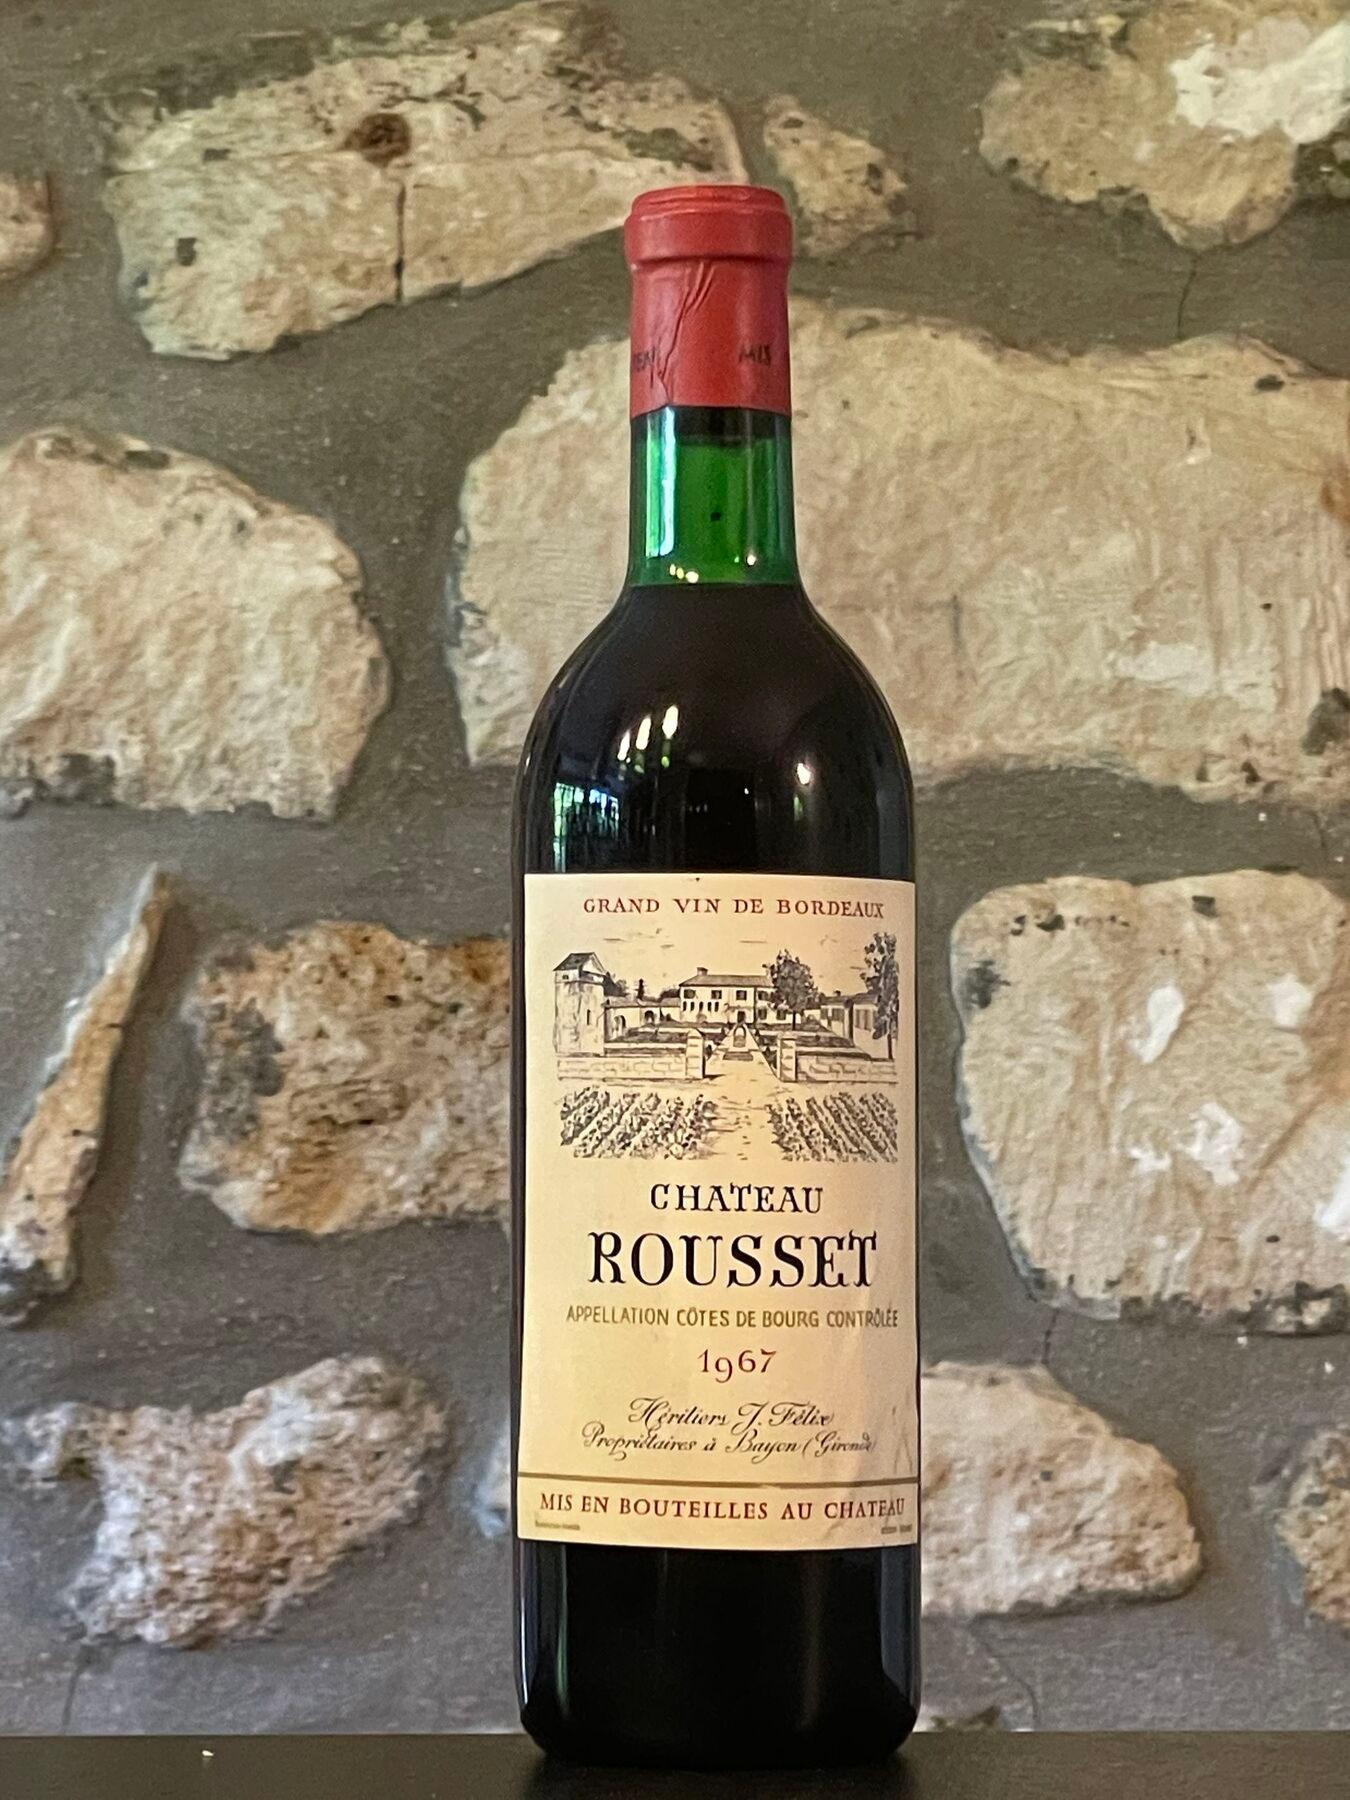 Vin rouge, Cote de Bourg, Château Rousset 1967